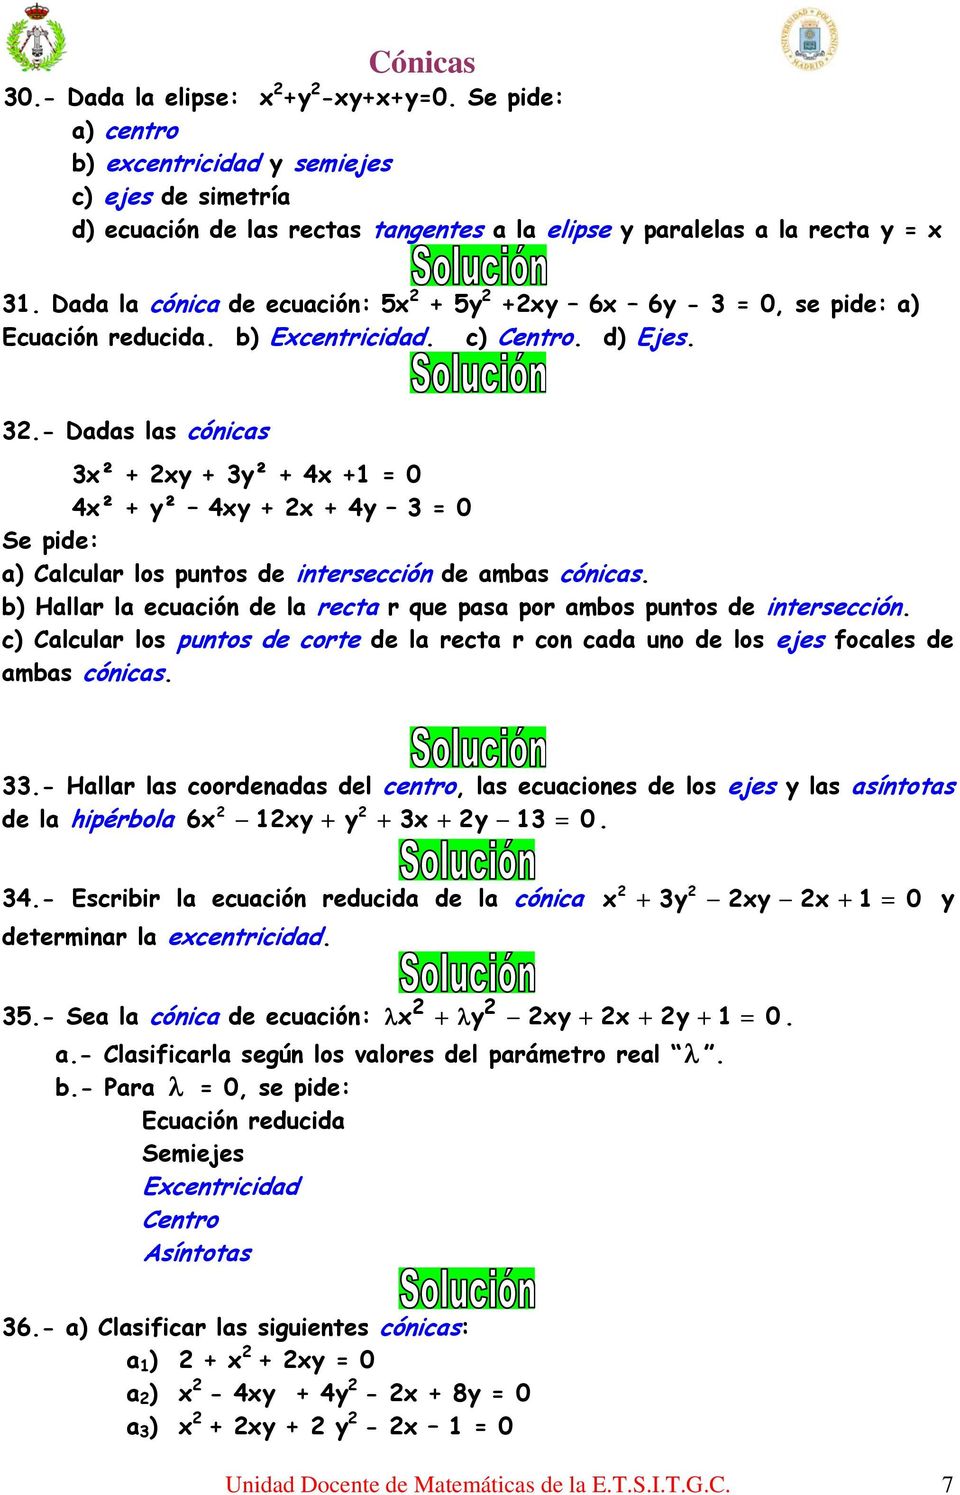 .- Dadas las cónicas x² + xy + y² + 4x + = 4x² + y² 4xy + x + 4y = Se pide: a) Calcular los puntos de intersección de ambas cónicas.